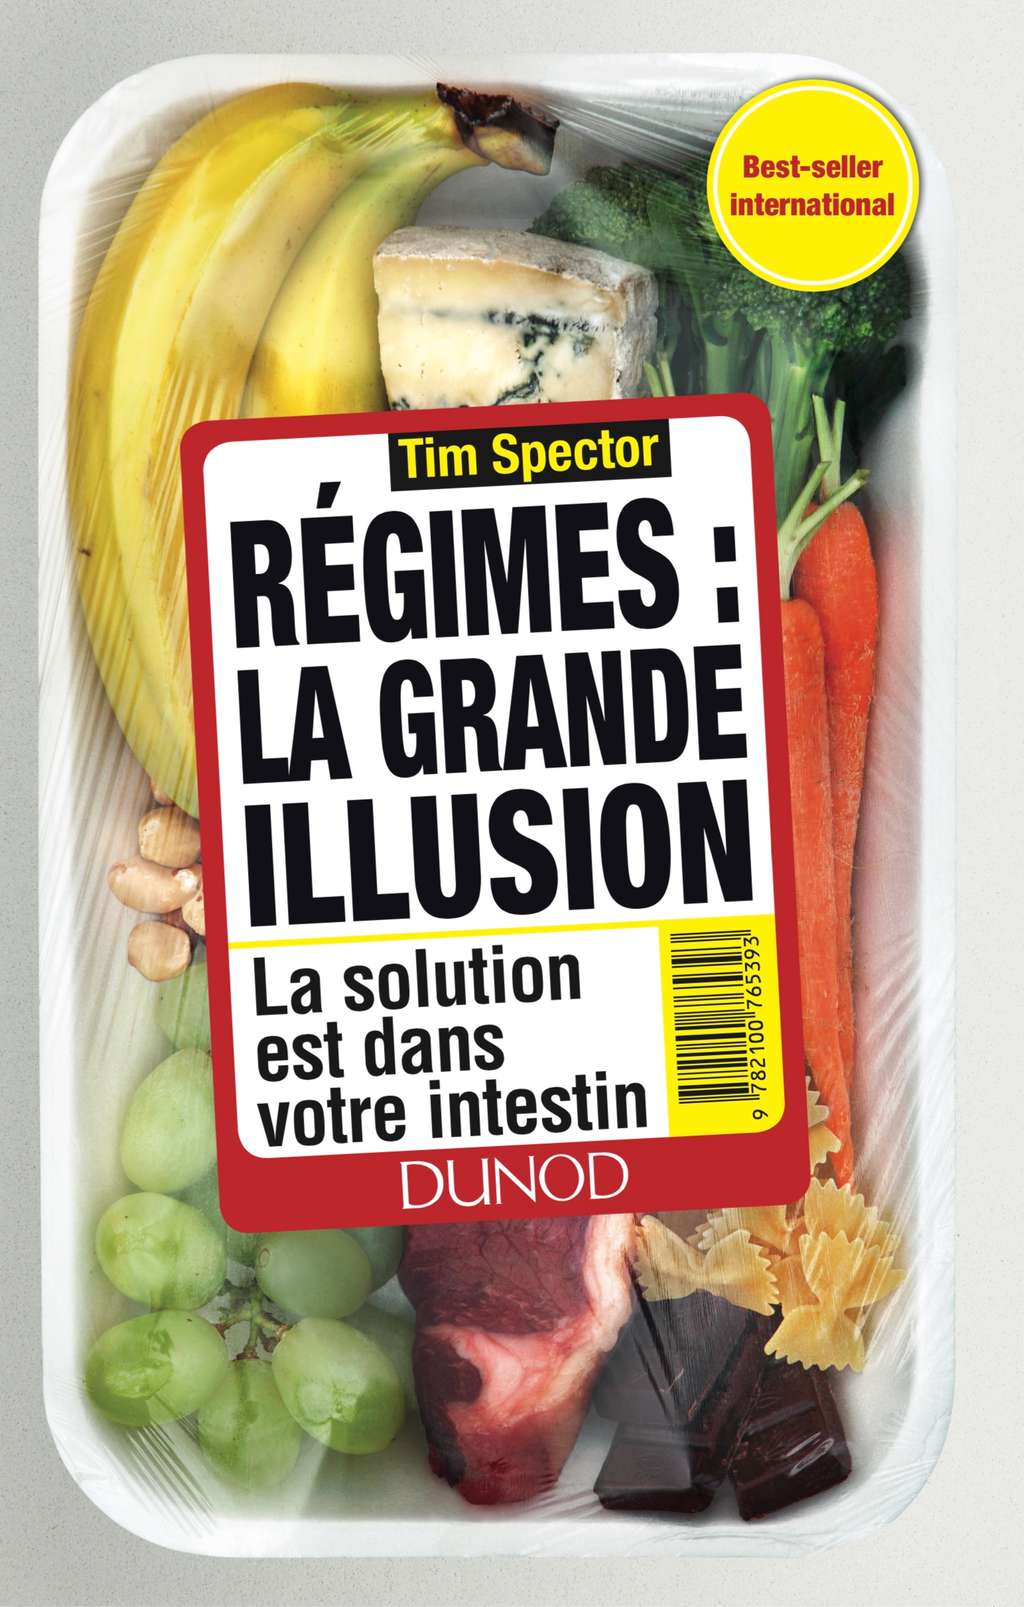 Découvrez le livre <em><a href="https://www.dunod.com/sciences-techniques/regimes-grande-illusion-solution-est-dans-votre-intestin" title="Régimes : la grande illusion" target="_blank">Régimes : la grande illusion</a></em>, paru aux éditions Dunod. © Dunod